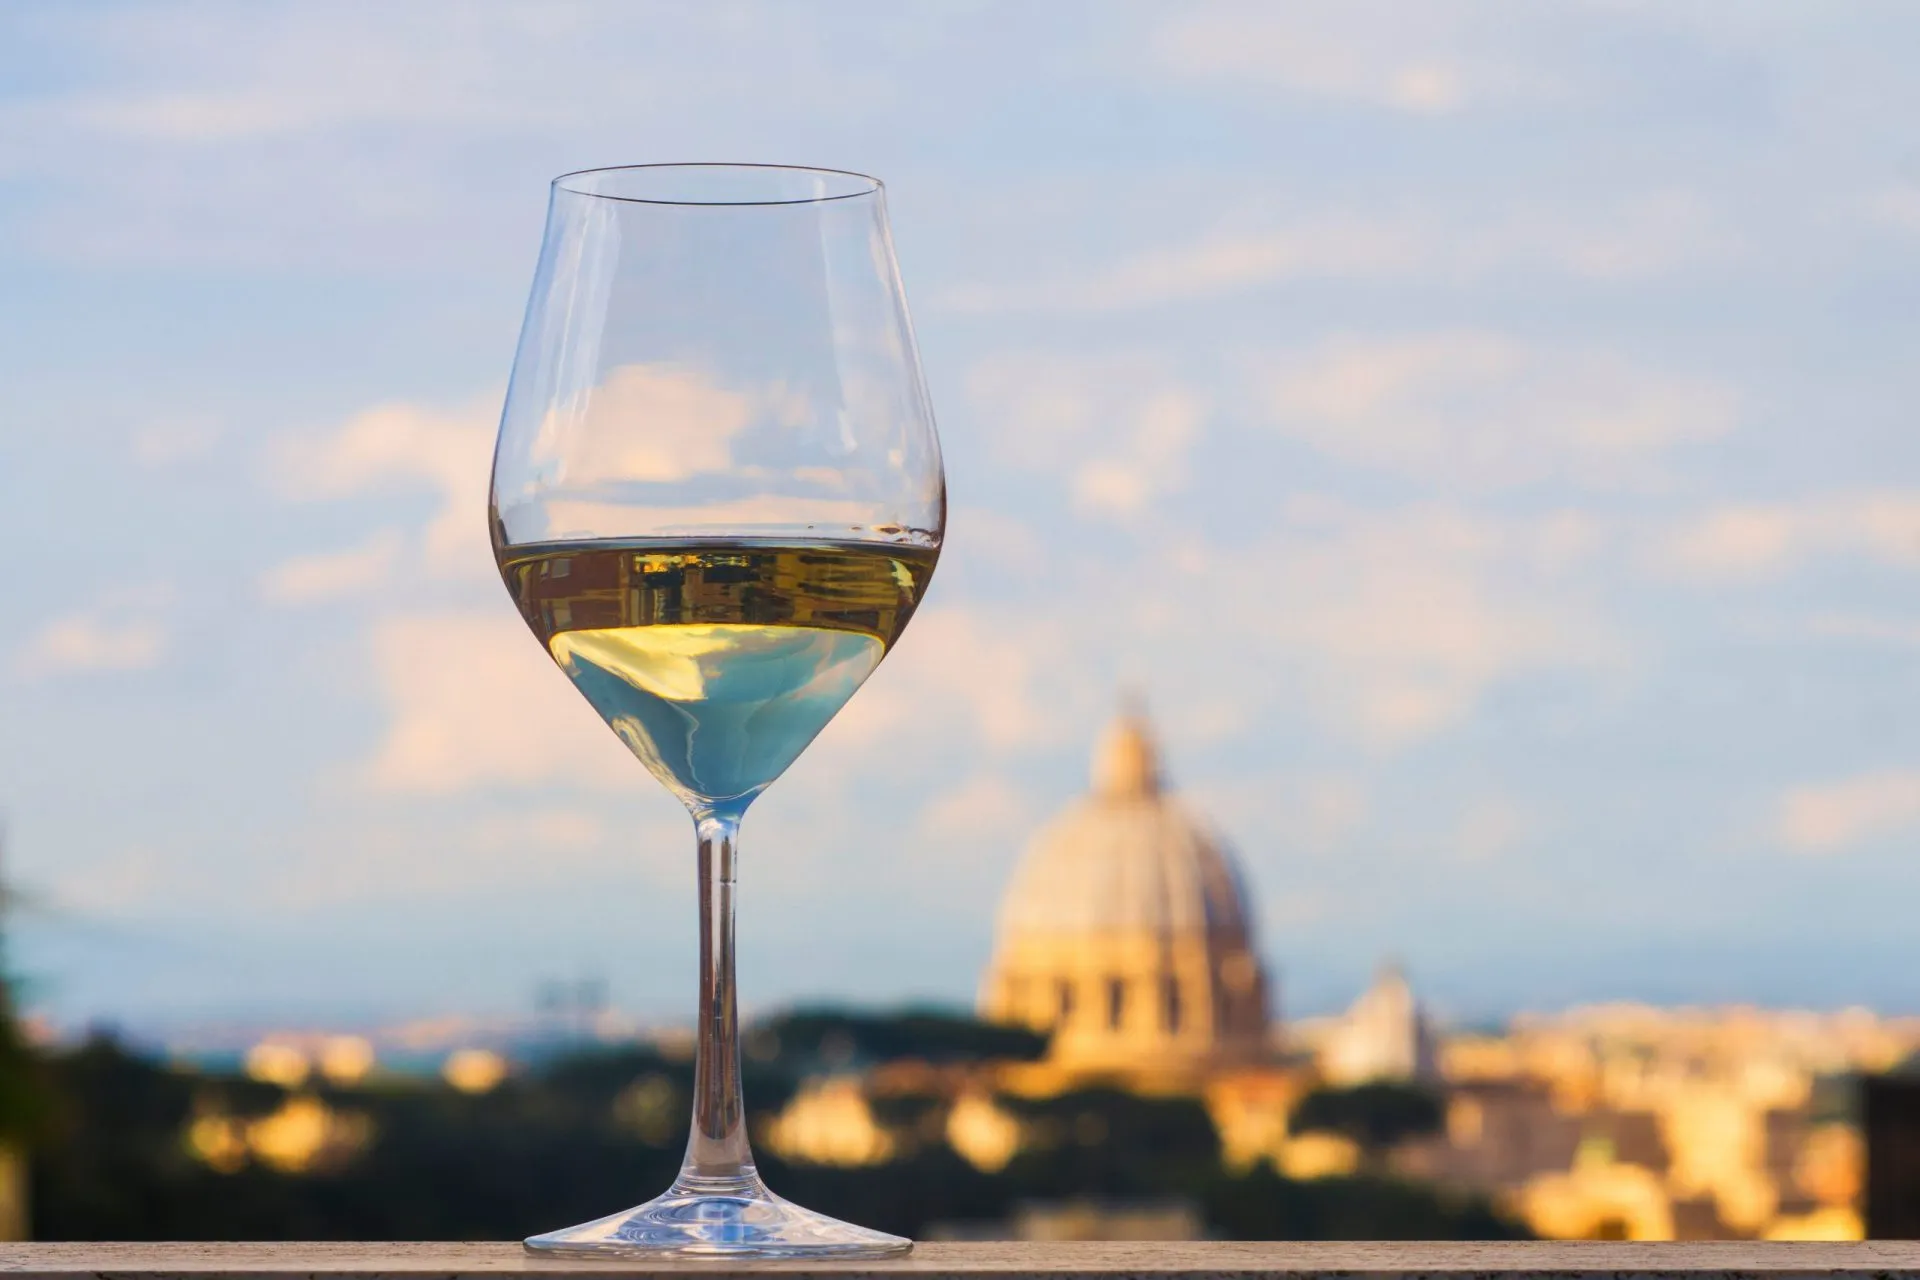 Rome wine tasting scaled